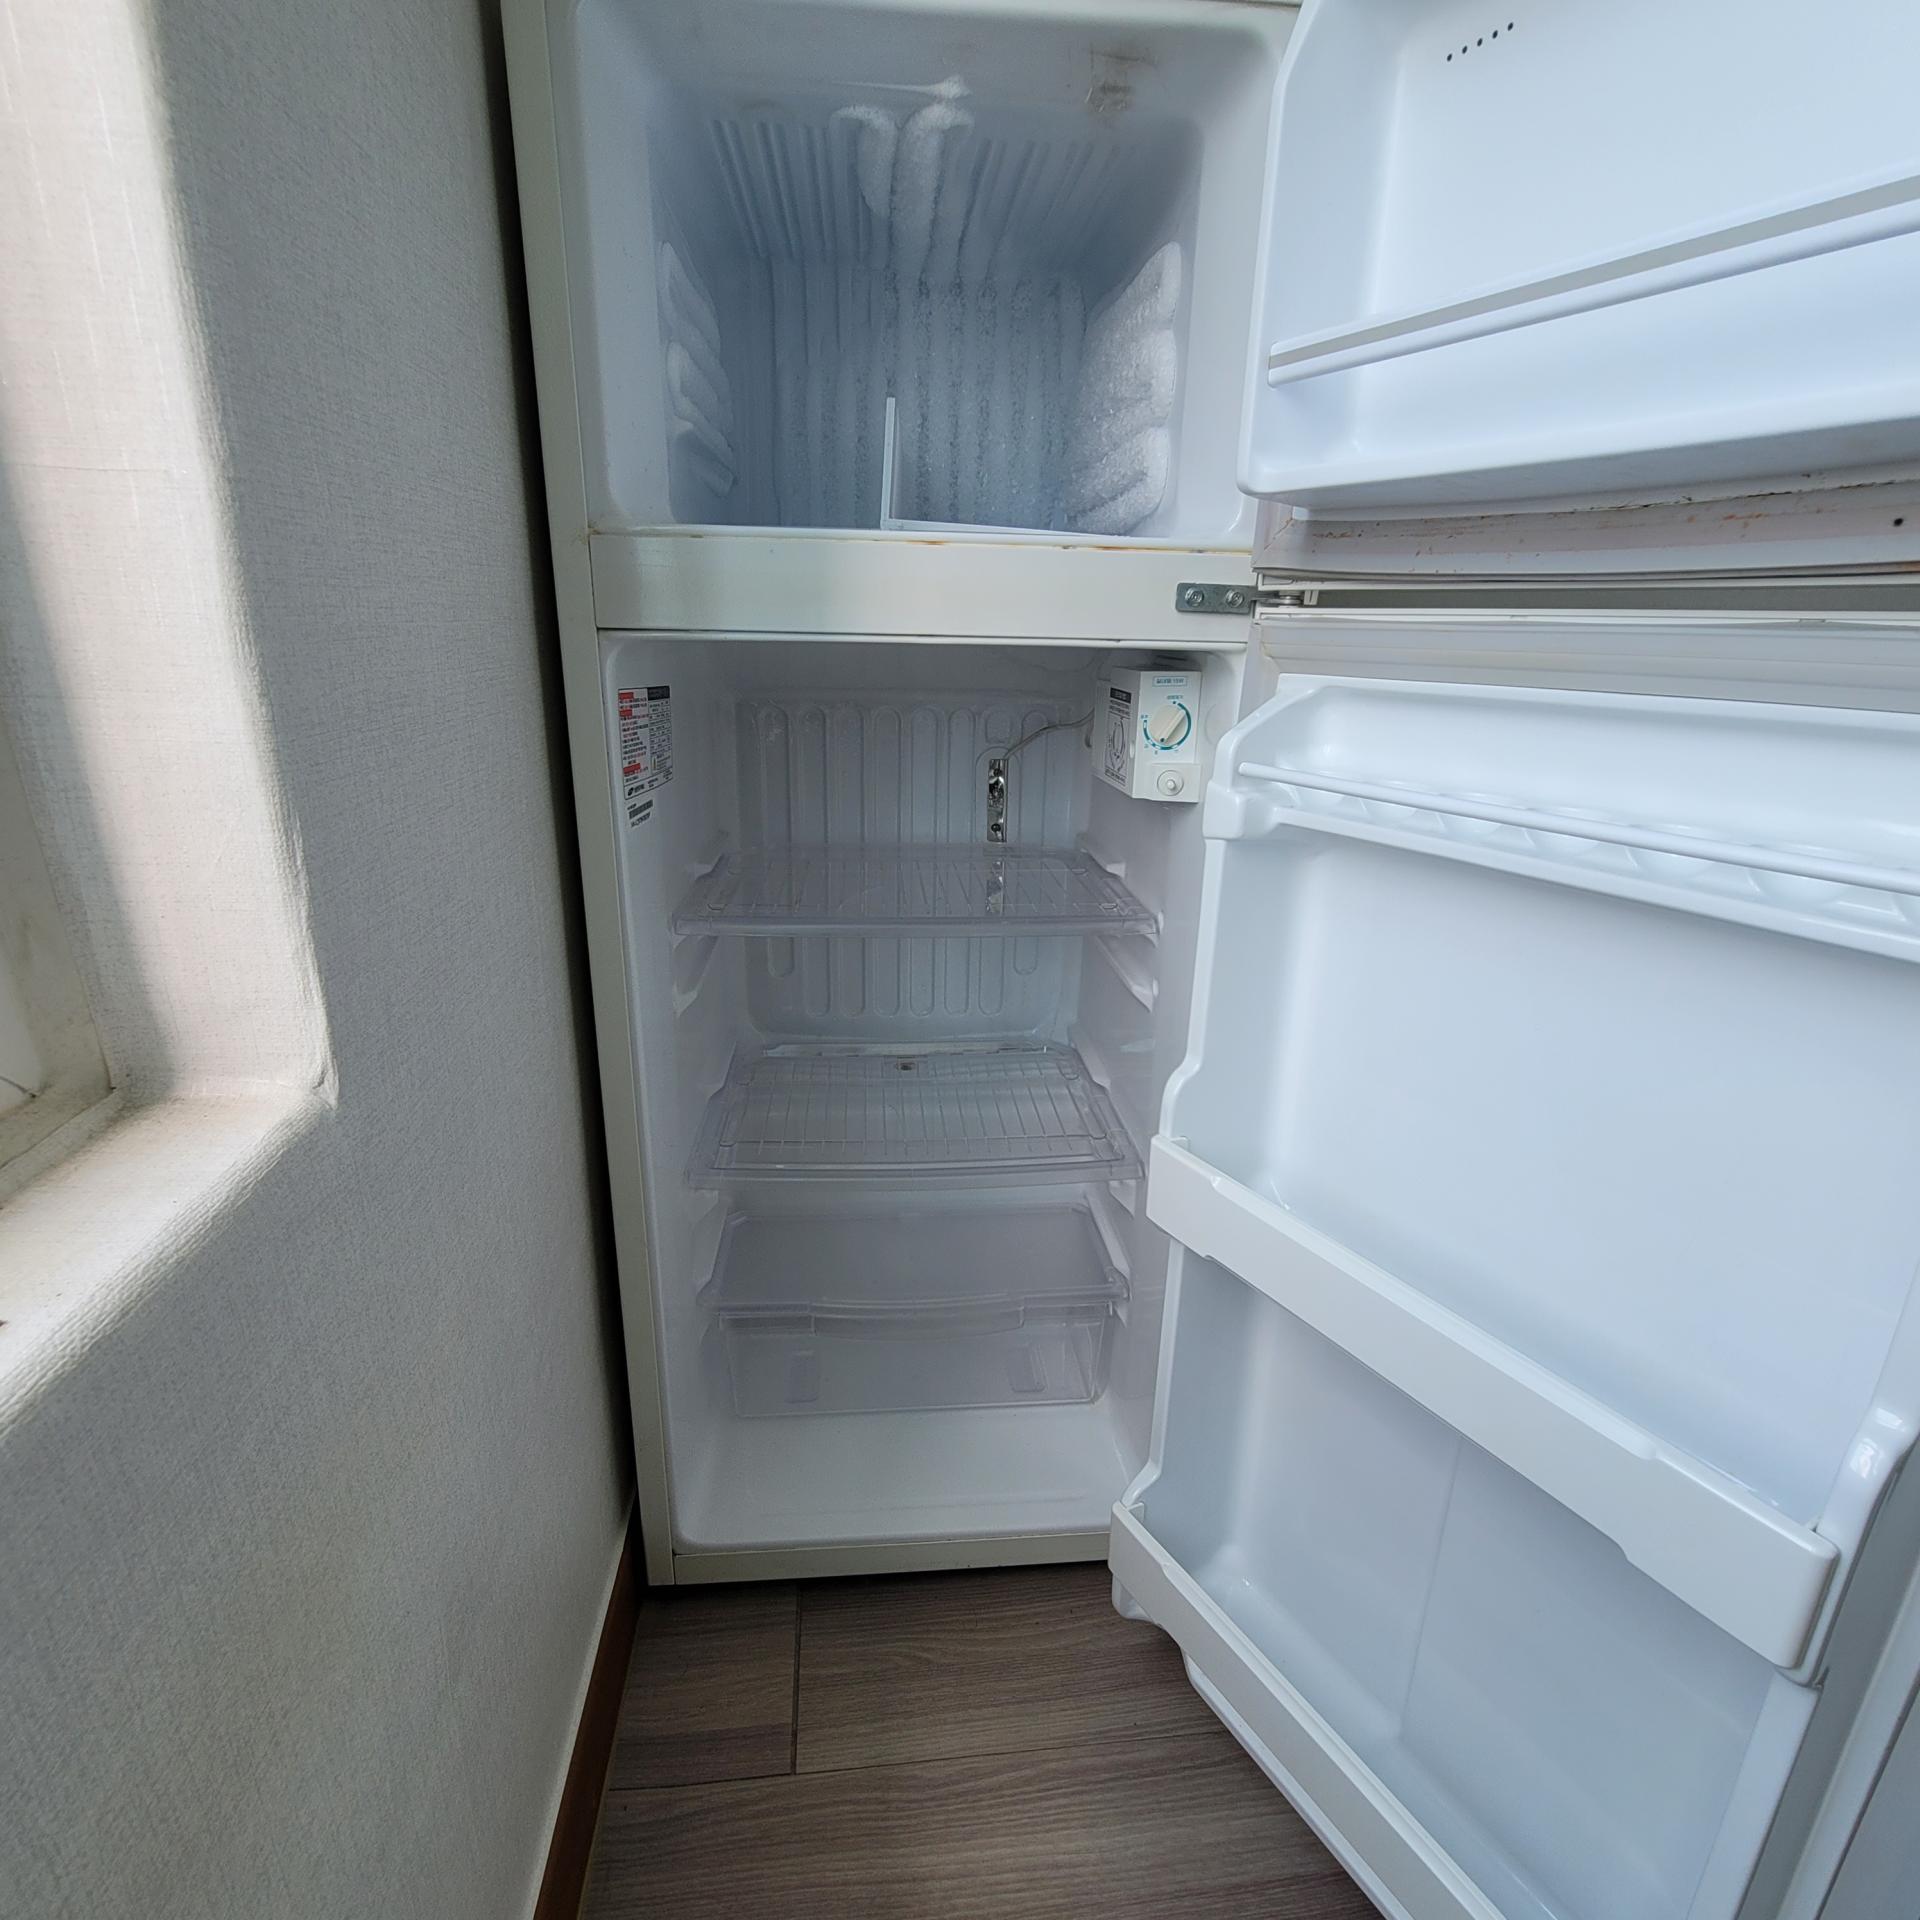 냉장고 및 기타 수납공간까지 모두 비운 뒤 깨끗하게 청소합니다 1 [우아한정리 제공]